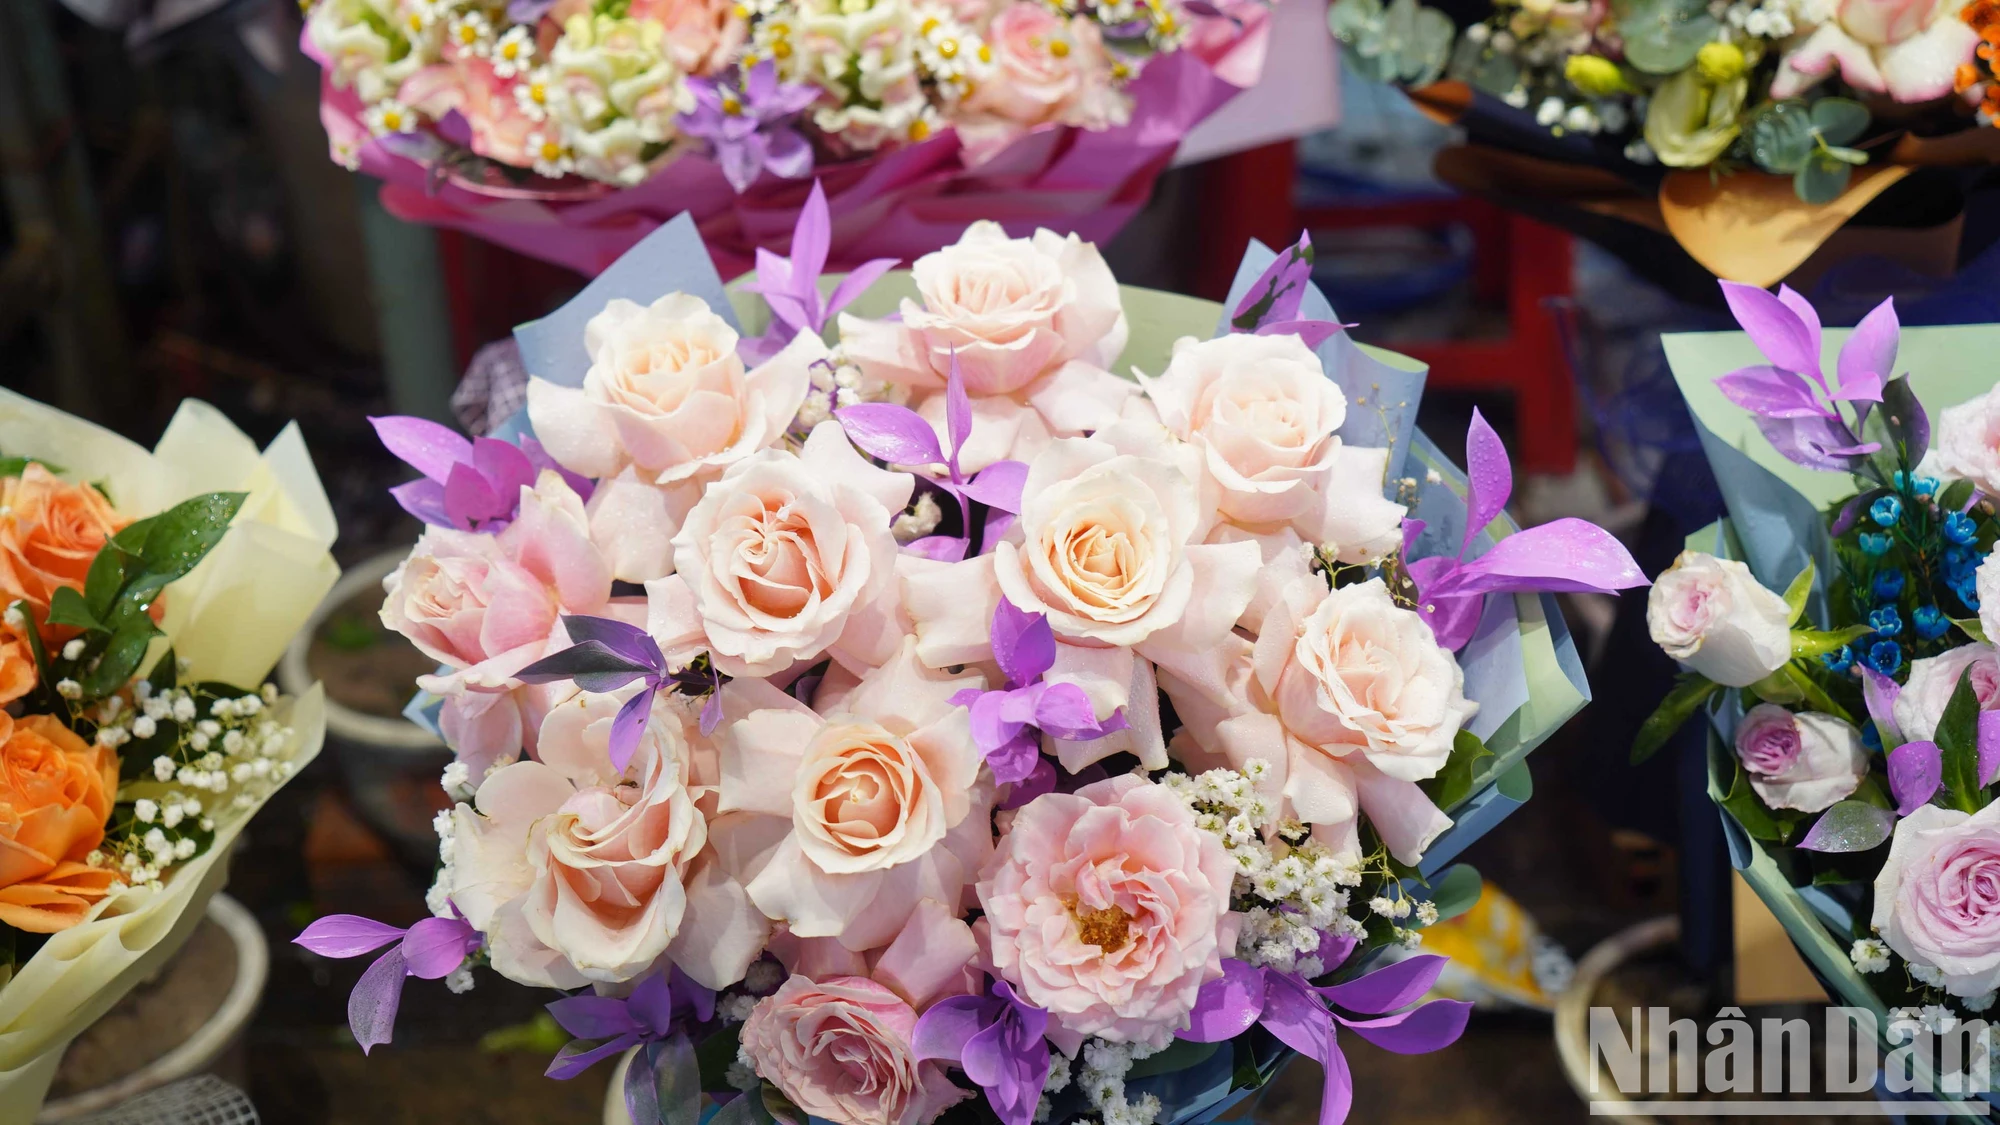 View - [Ảnh] Chợ hoa lớn nhất Thành phố Hồ Chí Minh nhộn nhịp trước ngày 8/3